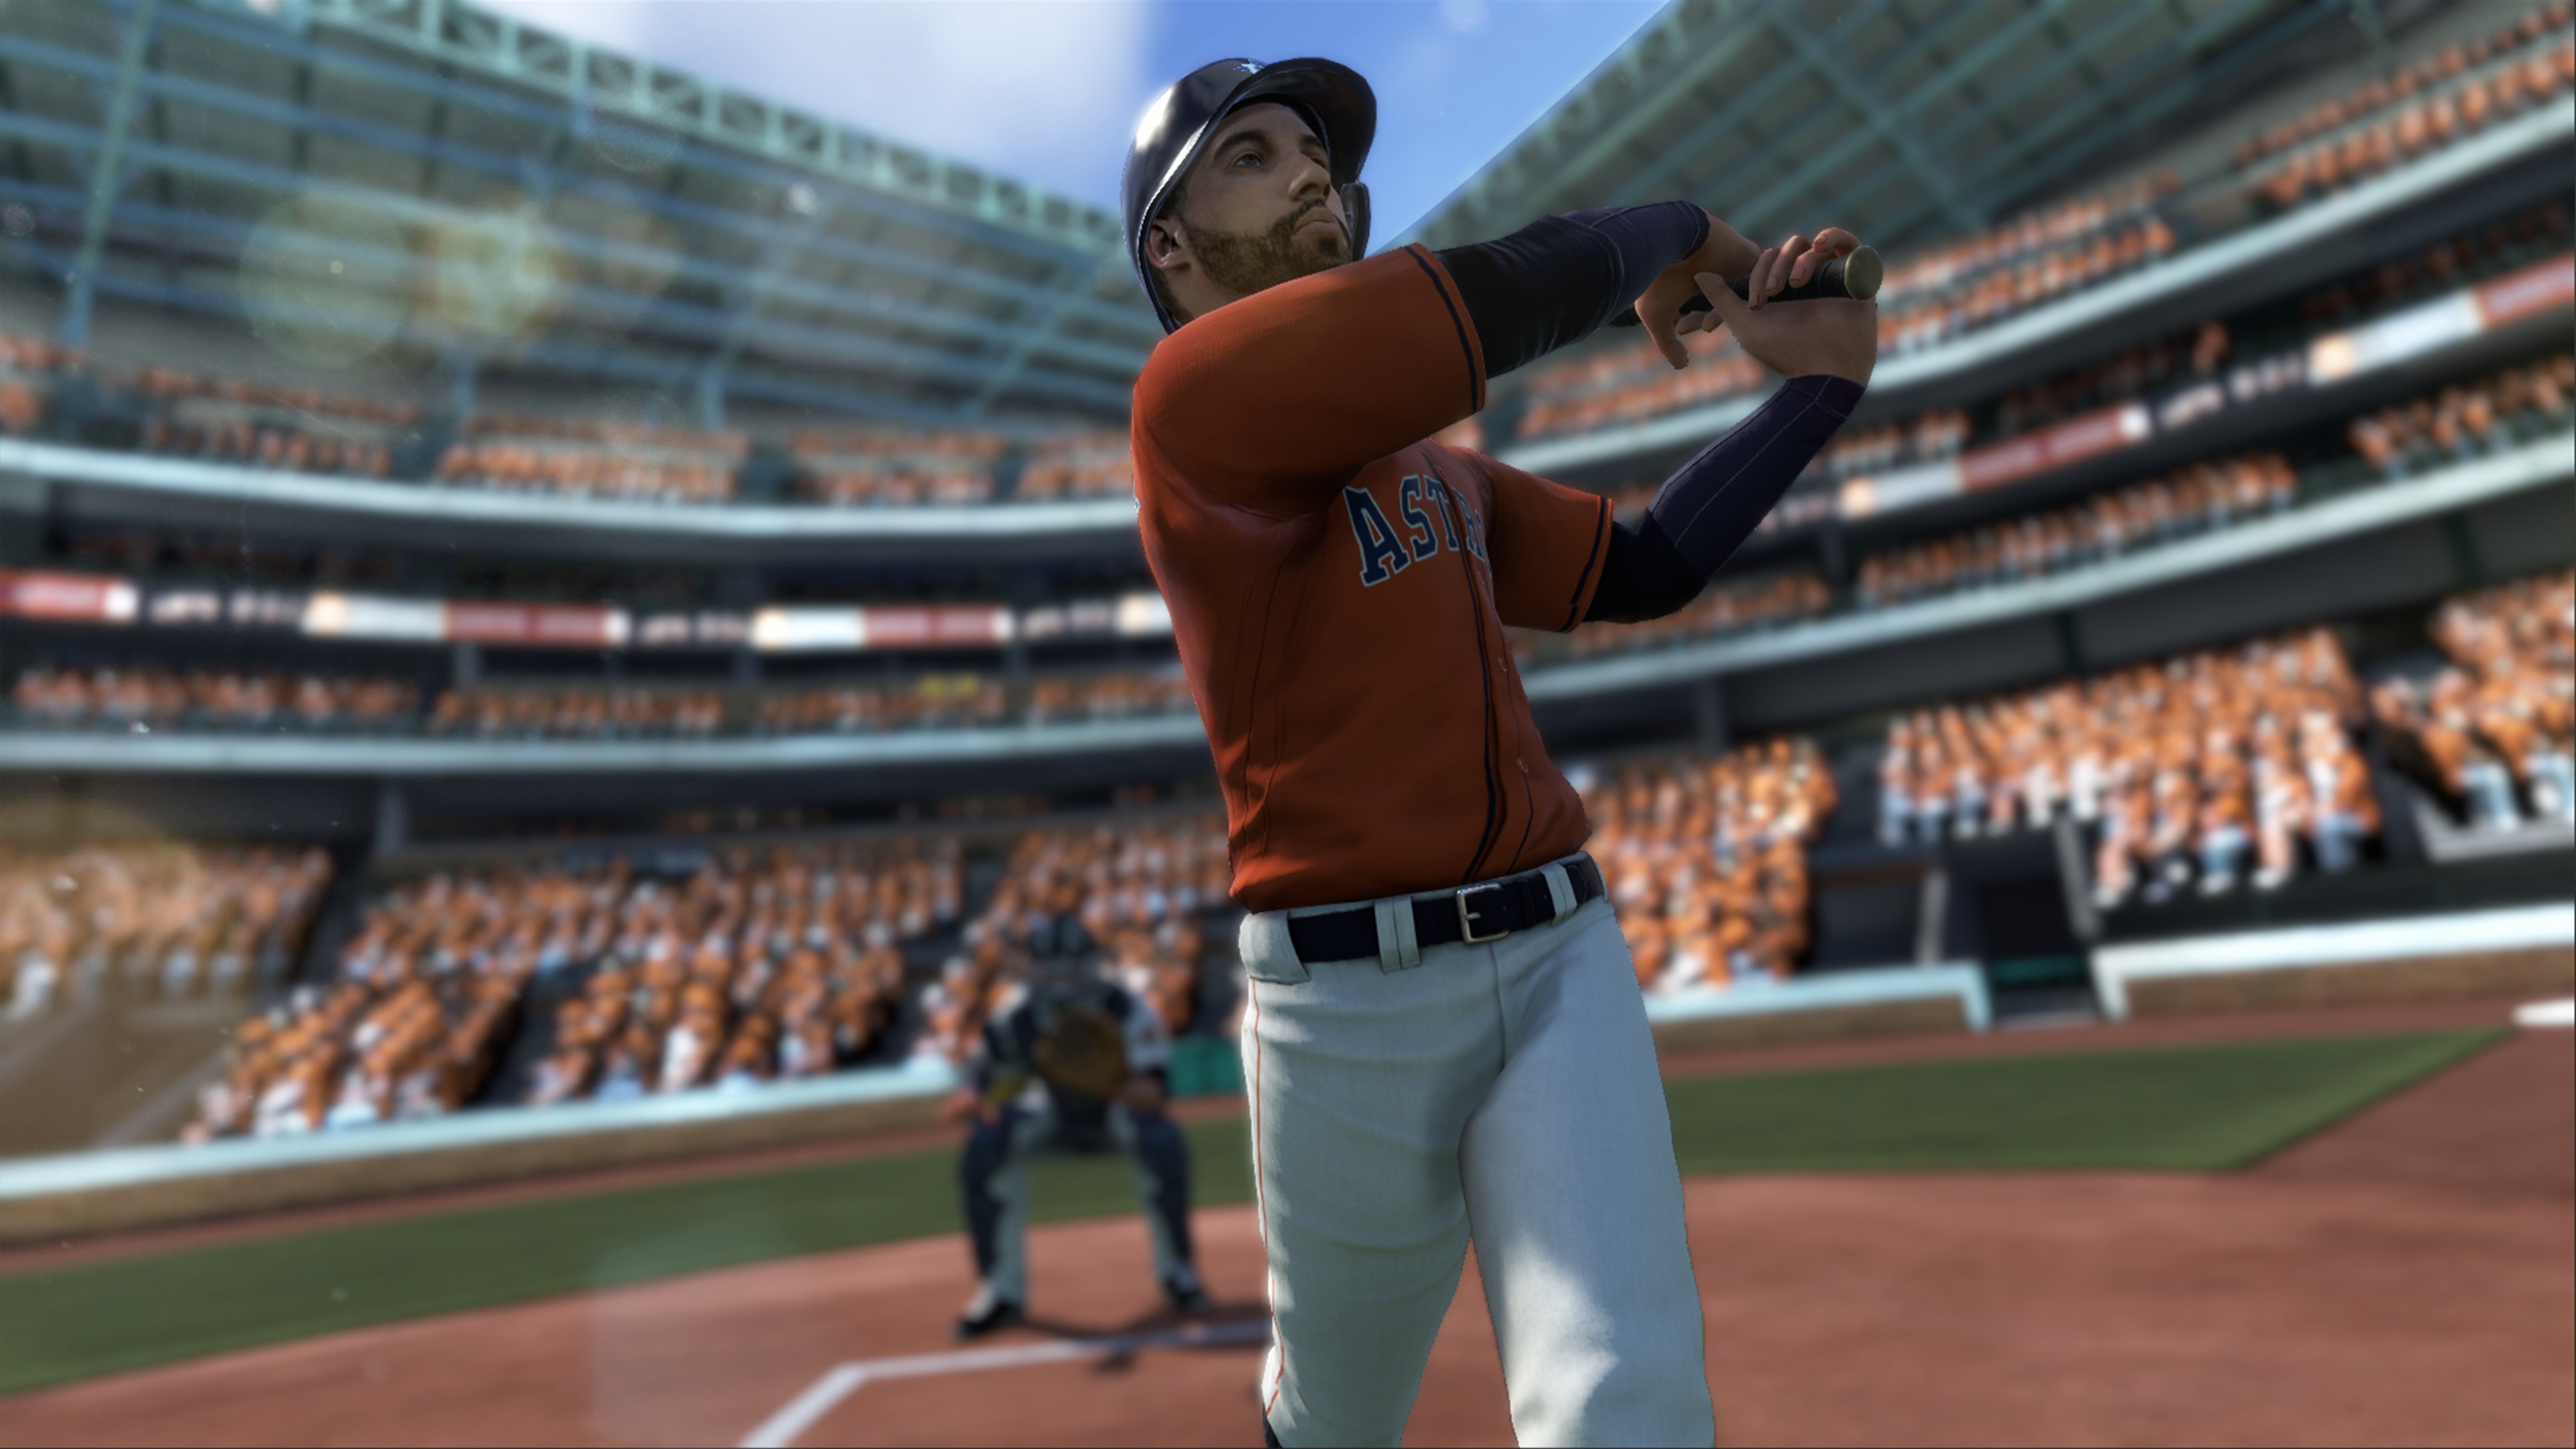 R.B.I. Baseball 18 XBOX One / Xbox Series X|S CD Key 56.49 usd